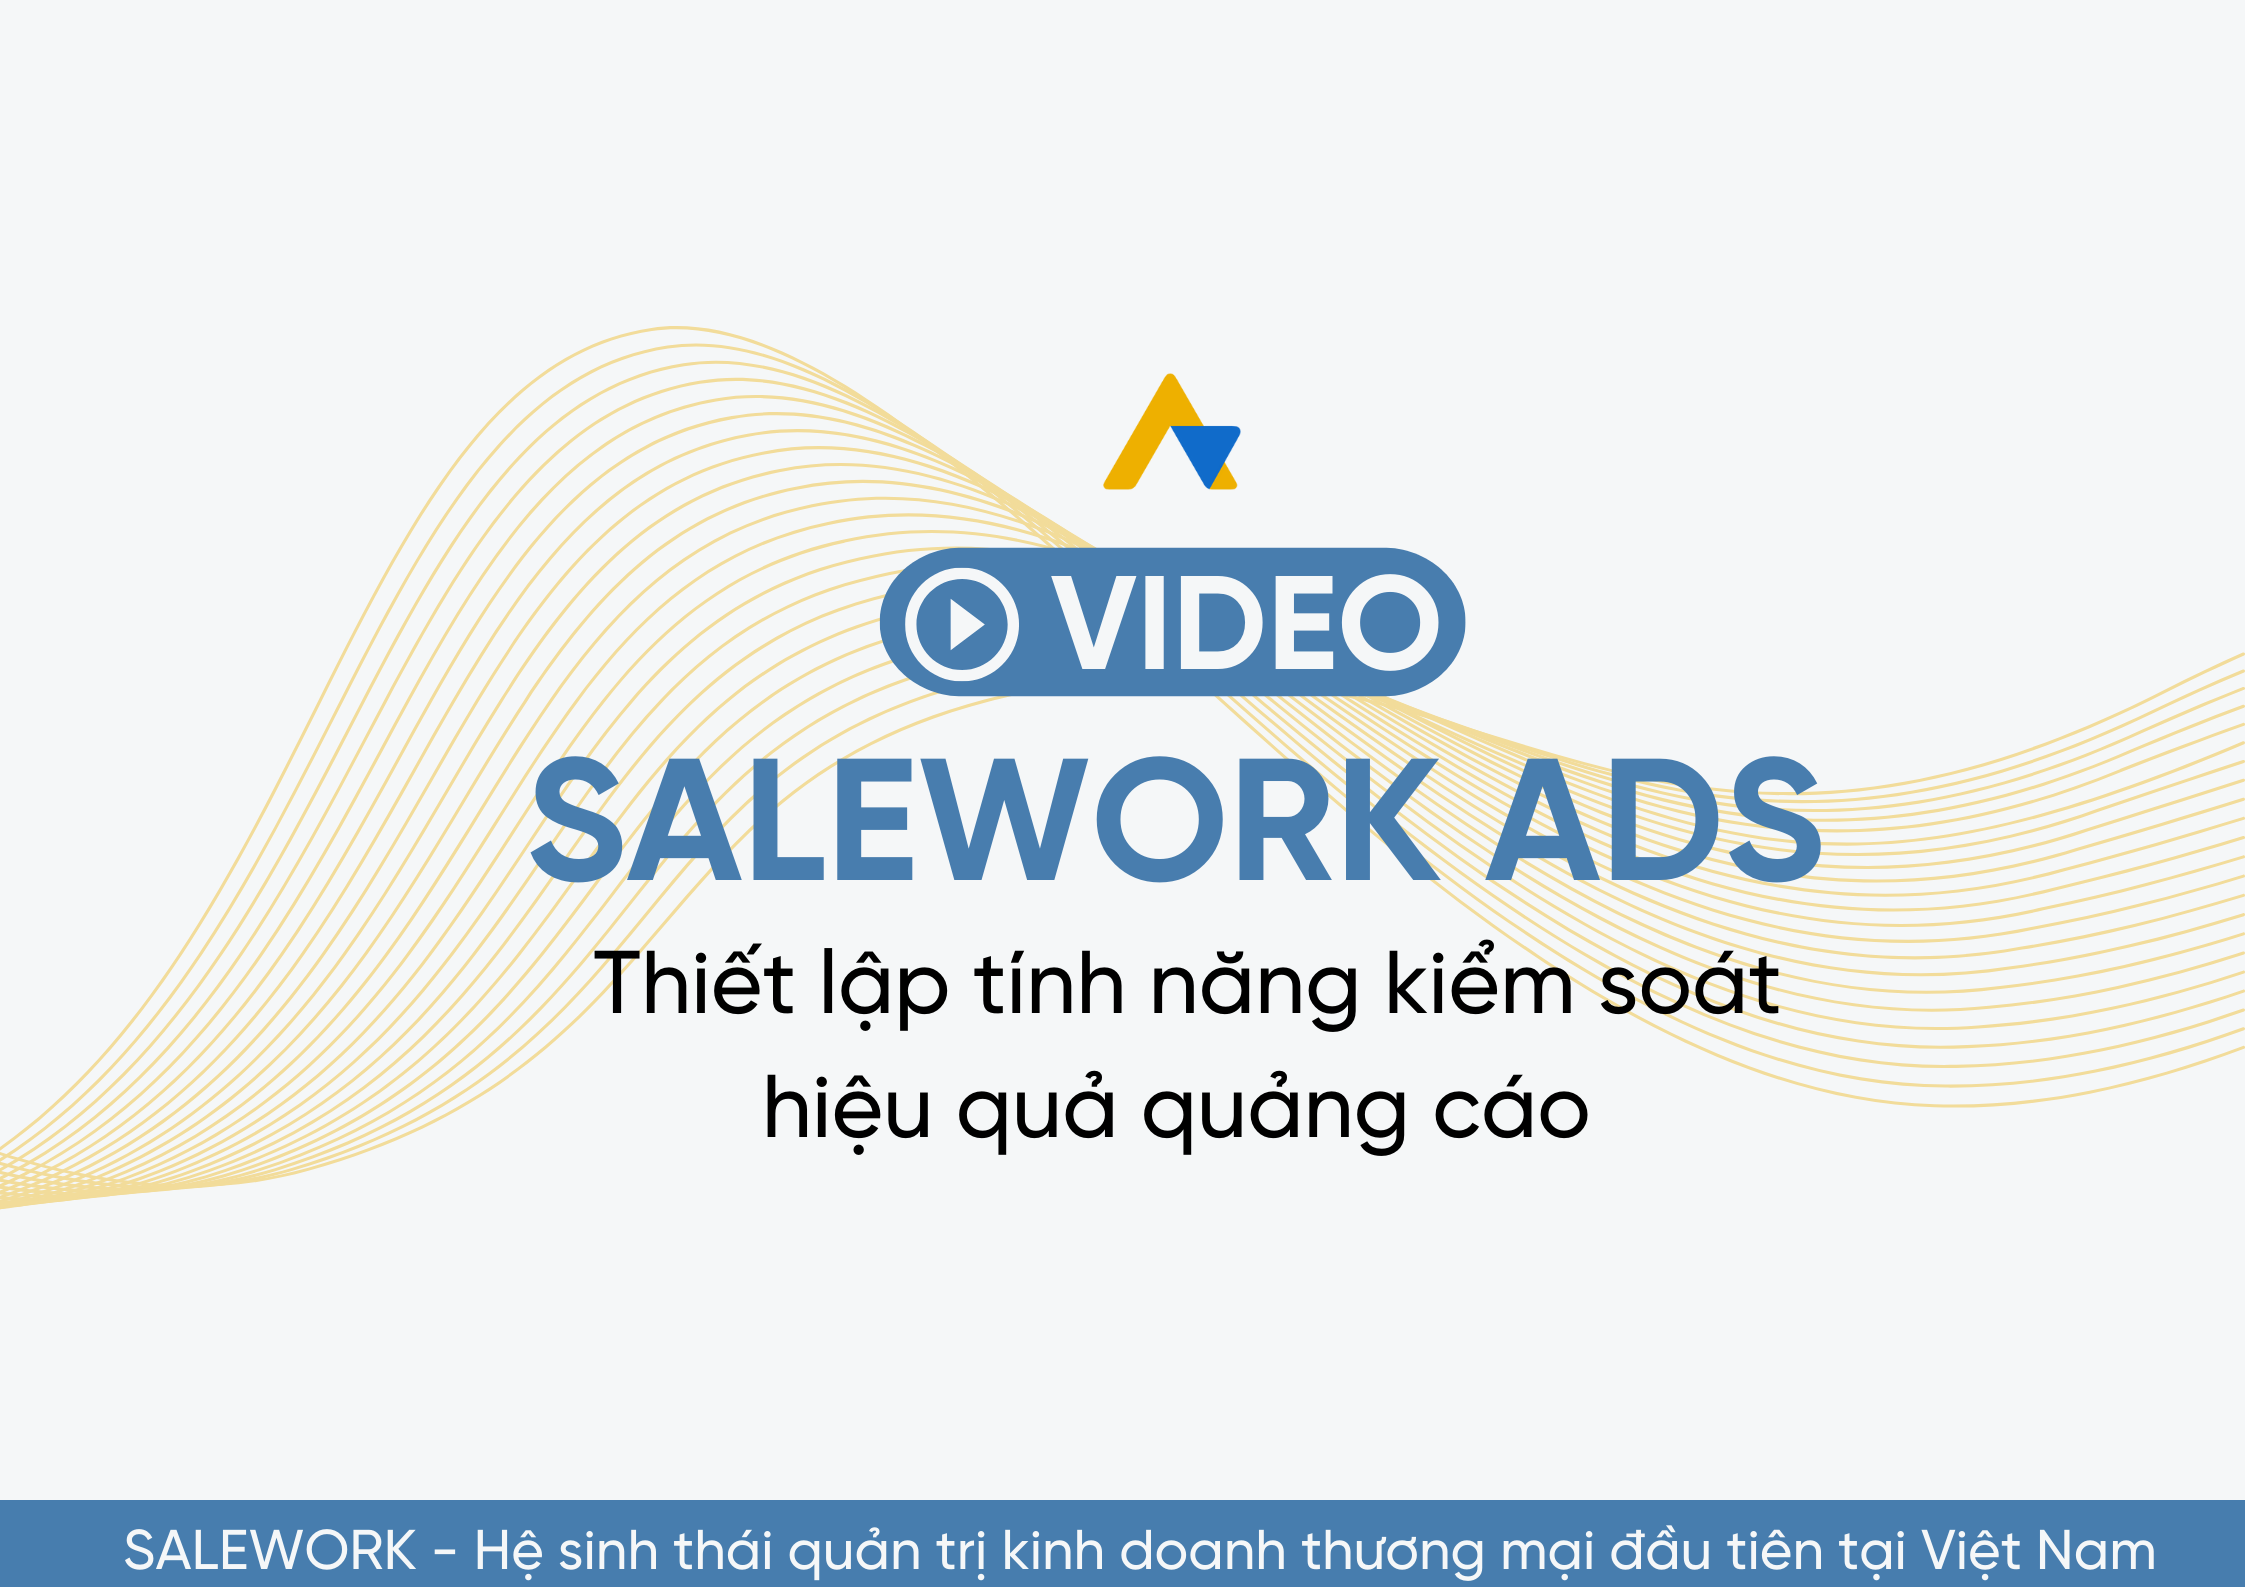 [VIDEO] Thiết lập tính năng kiểm soát hiệu quả quảng cáo tại Salework Ads - 11